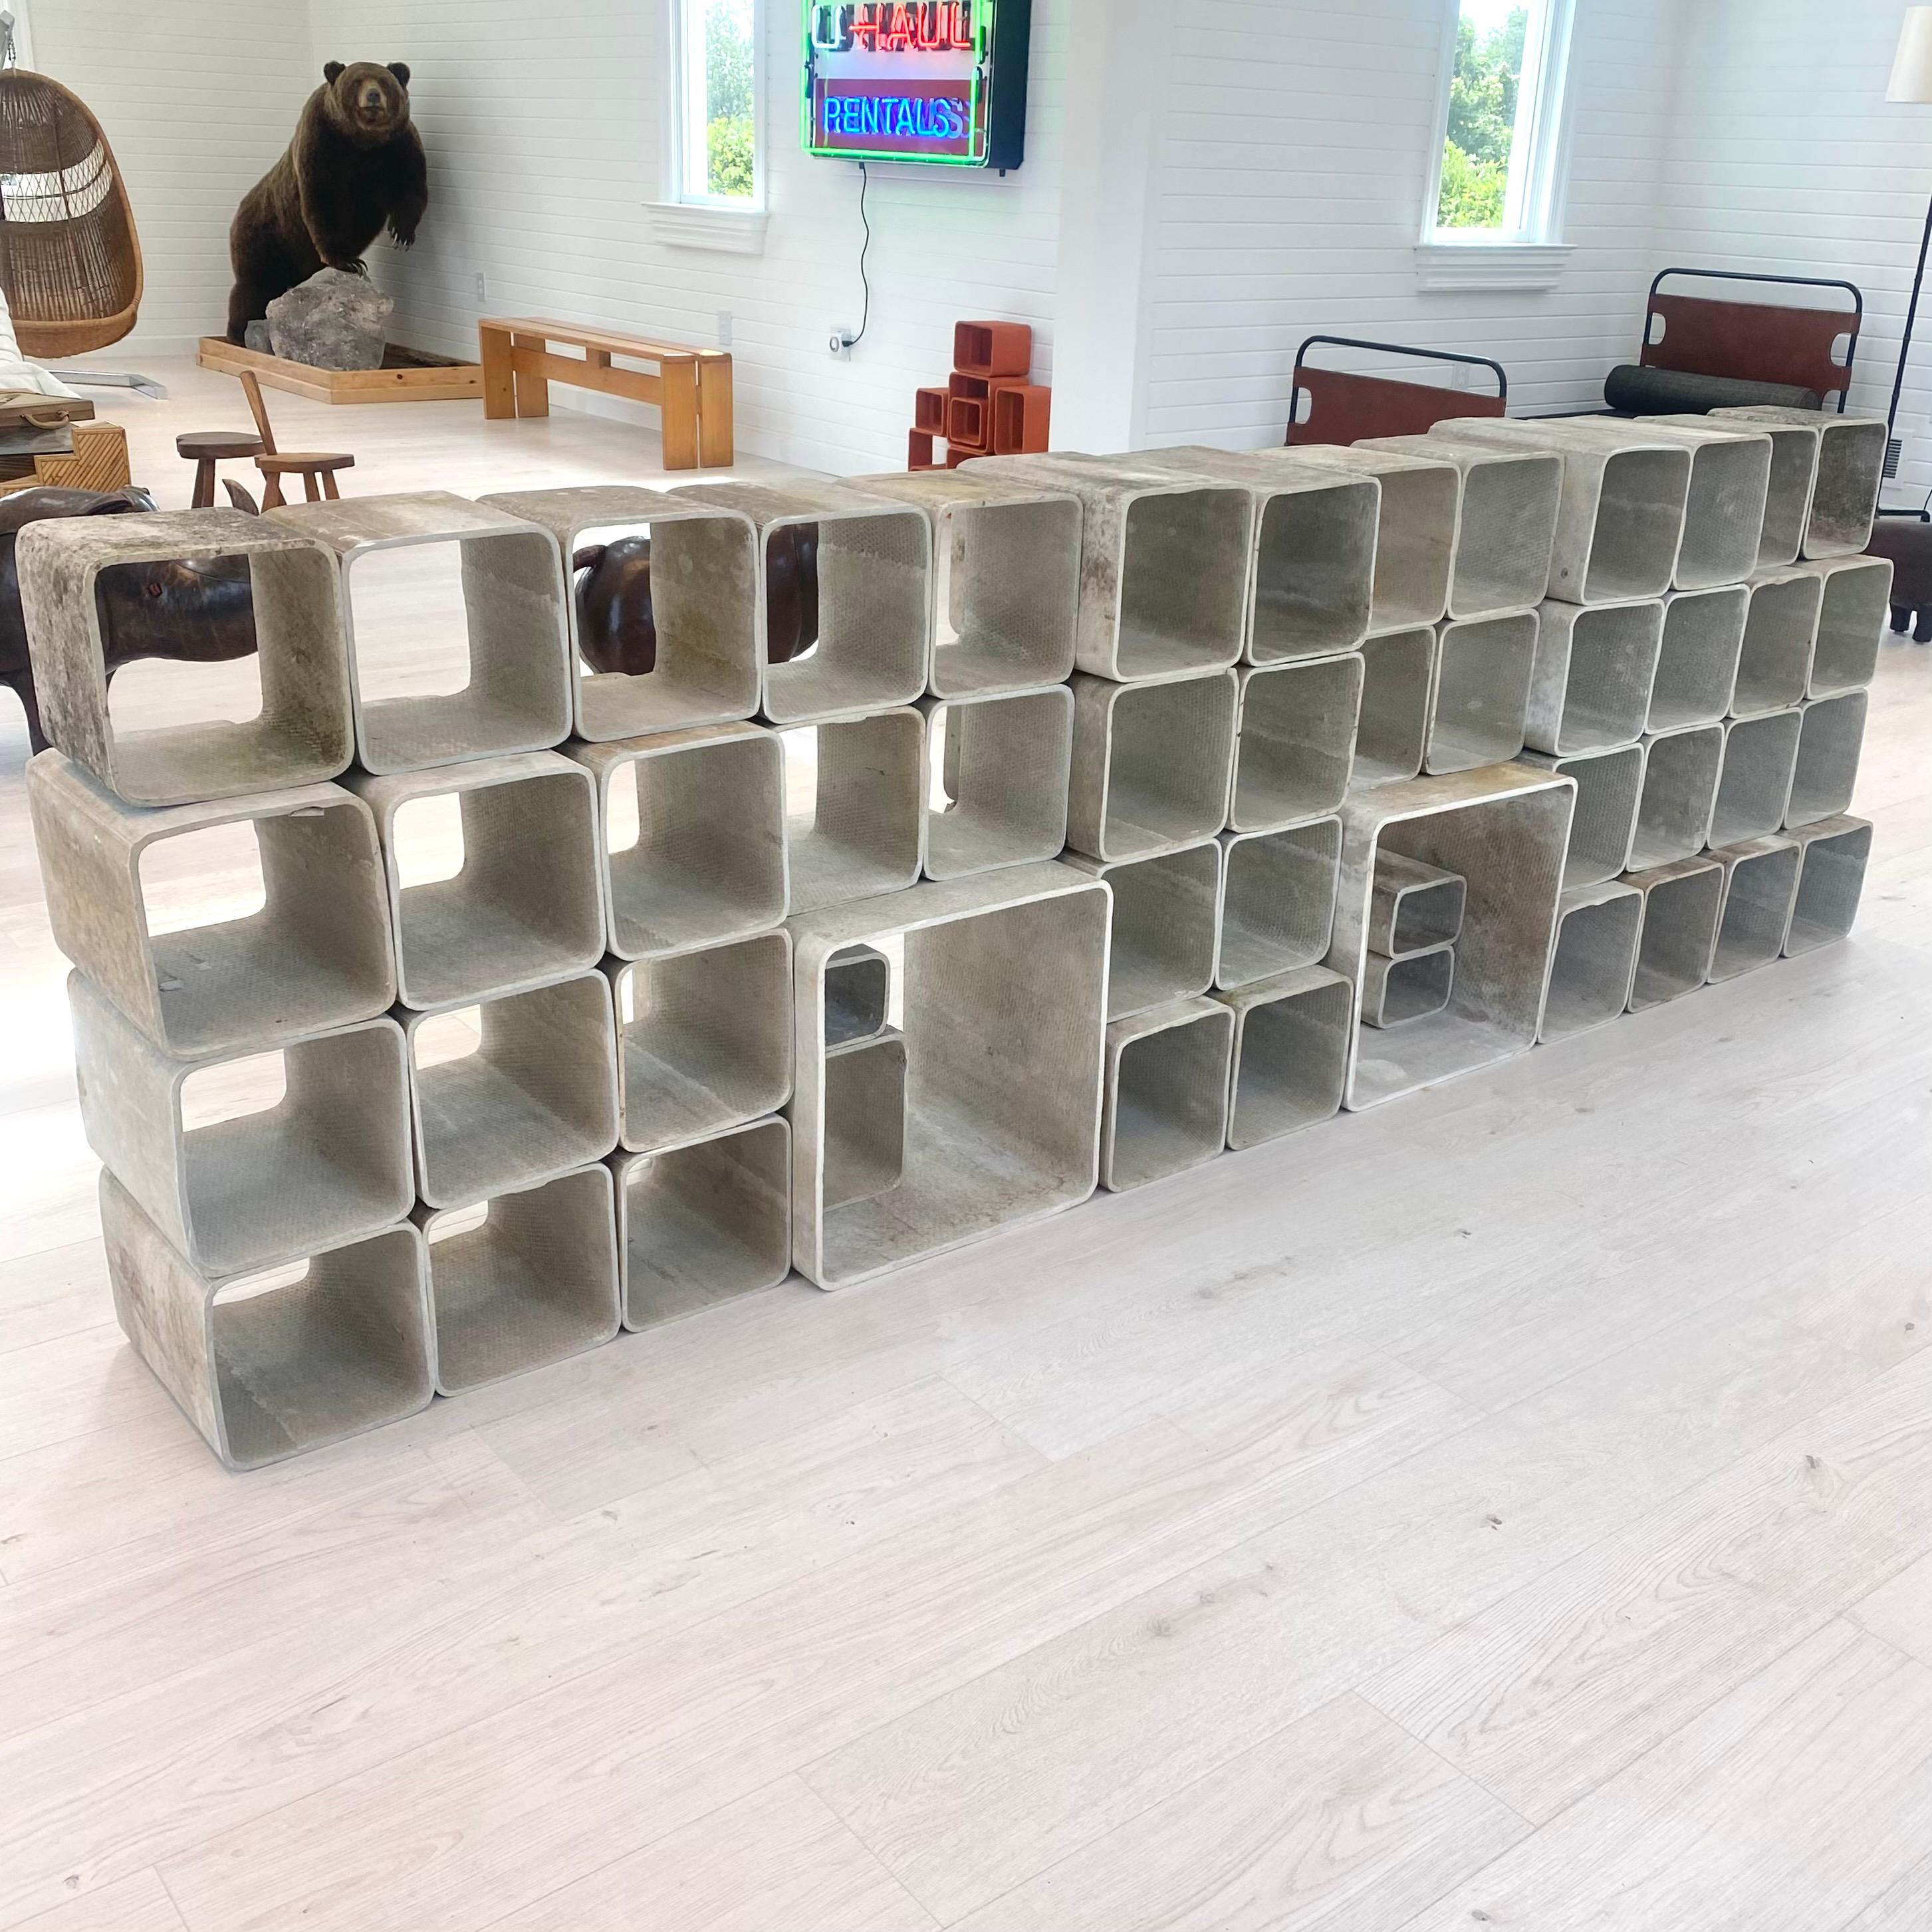 Étonnante bibliothèque monumentale en béton de 50 pièces de Willy Guhl. Composé de 4 cubes en béton de tailles différentes fabriqués à la main. Entièrement modulaire, il peut être agencé de multiples façons. Couleur originale du béton. Différents